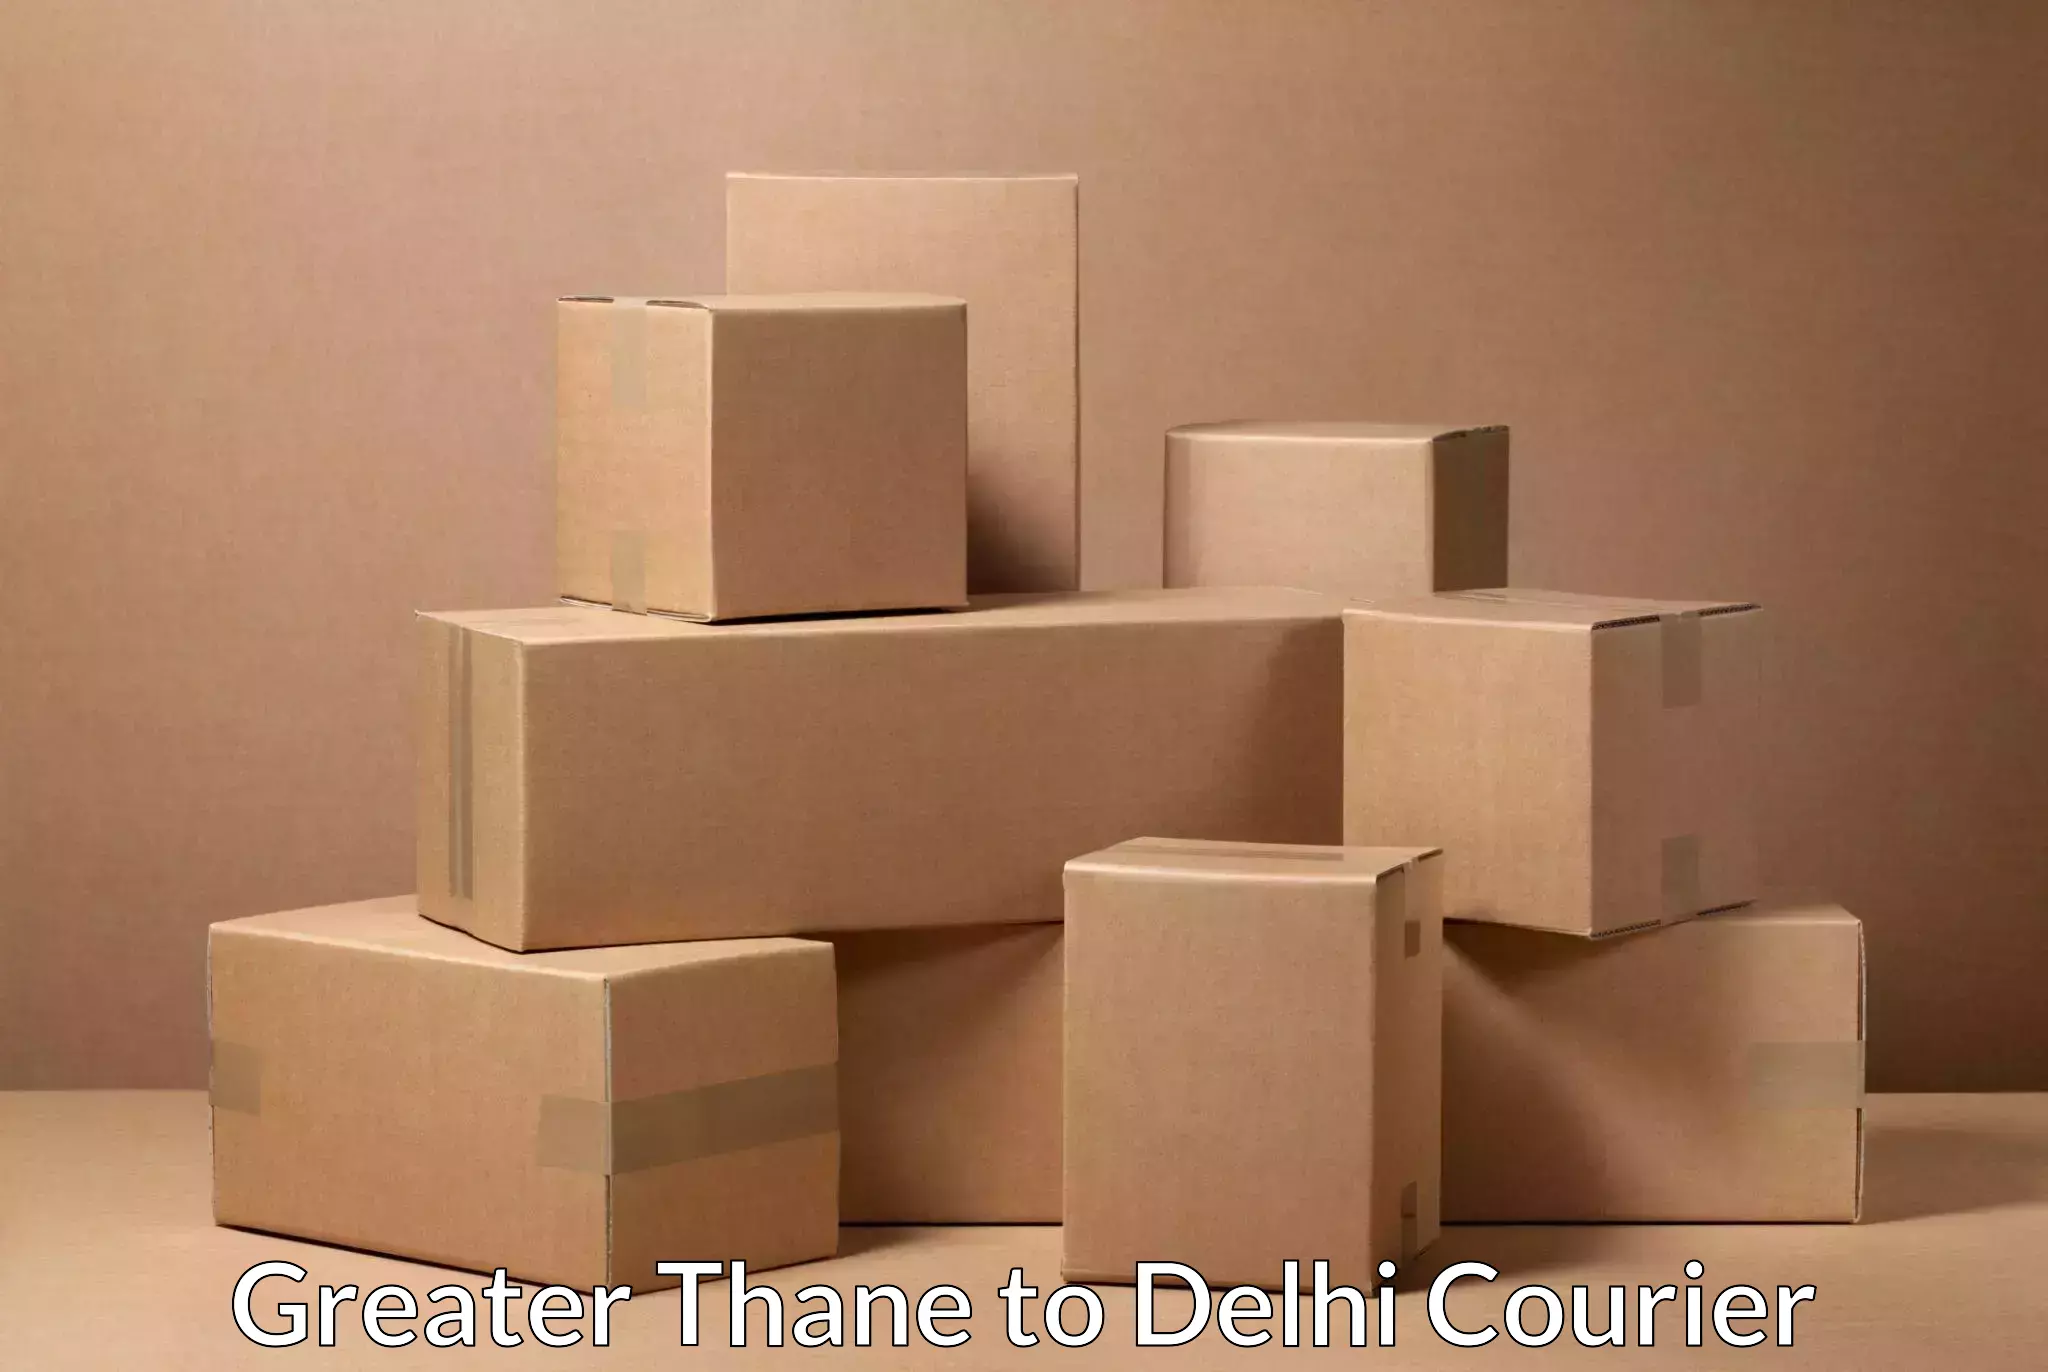 Cargo courier service Greater Thane to Ramesh Nagar